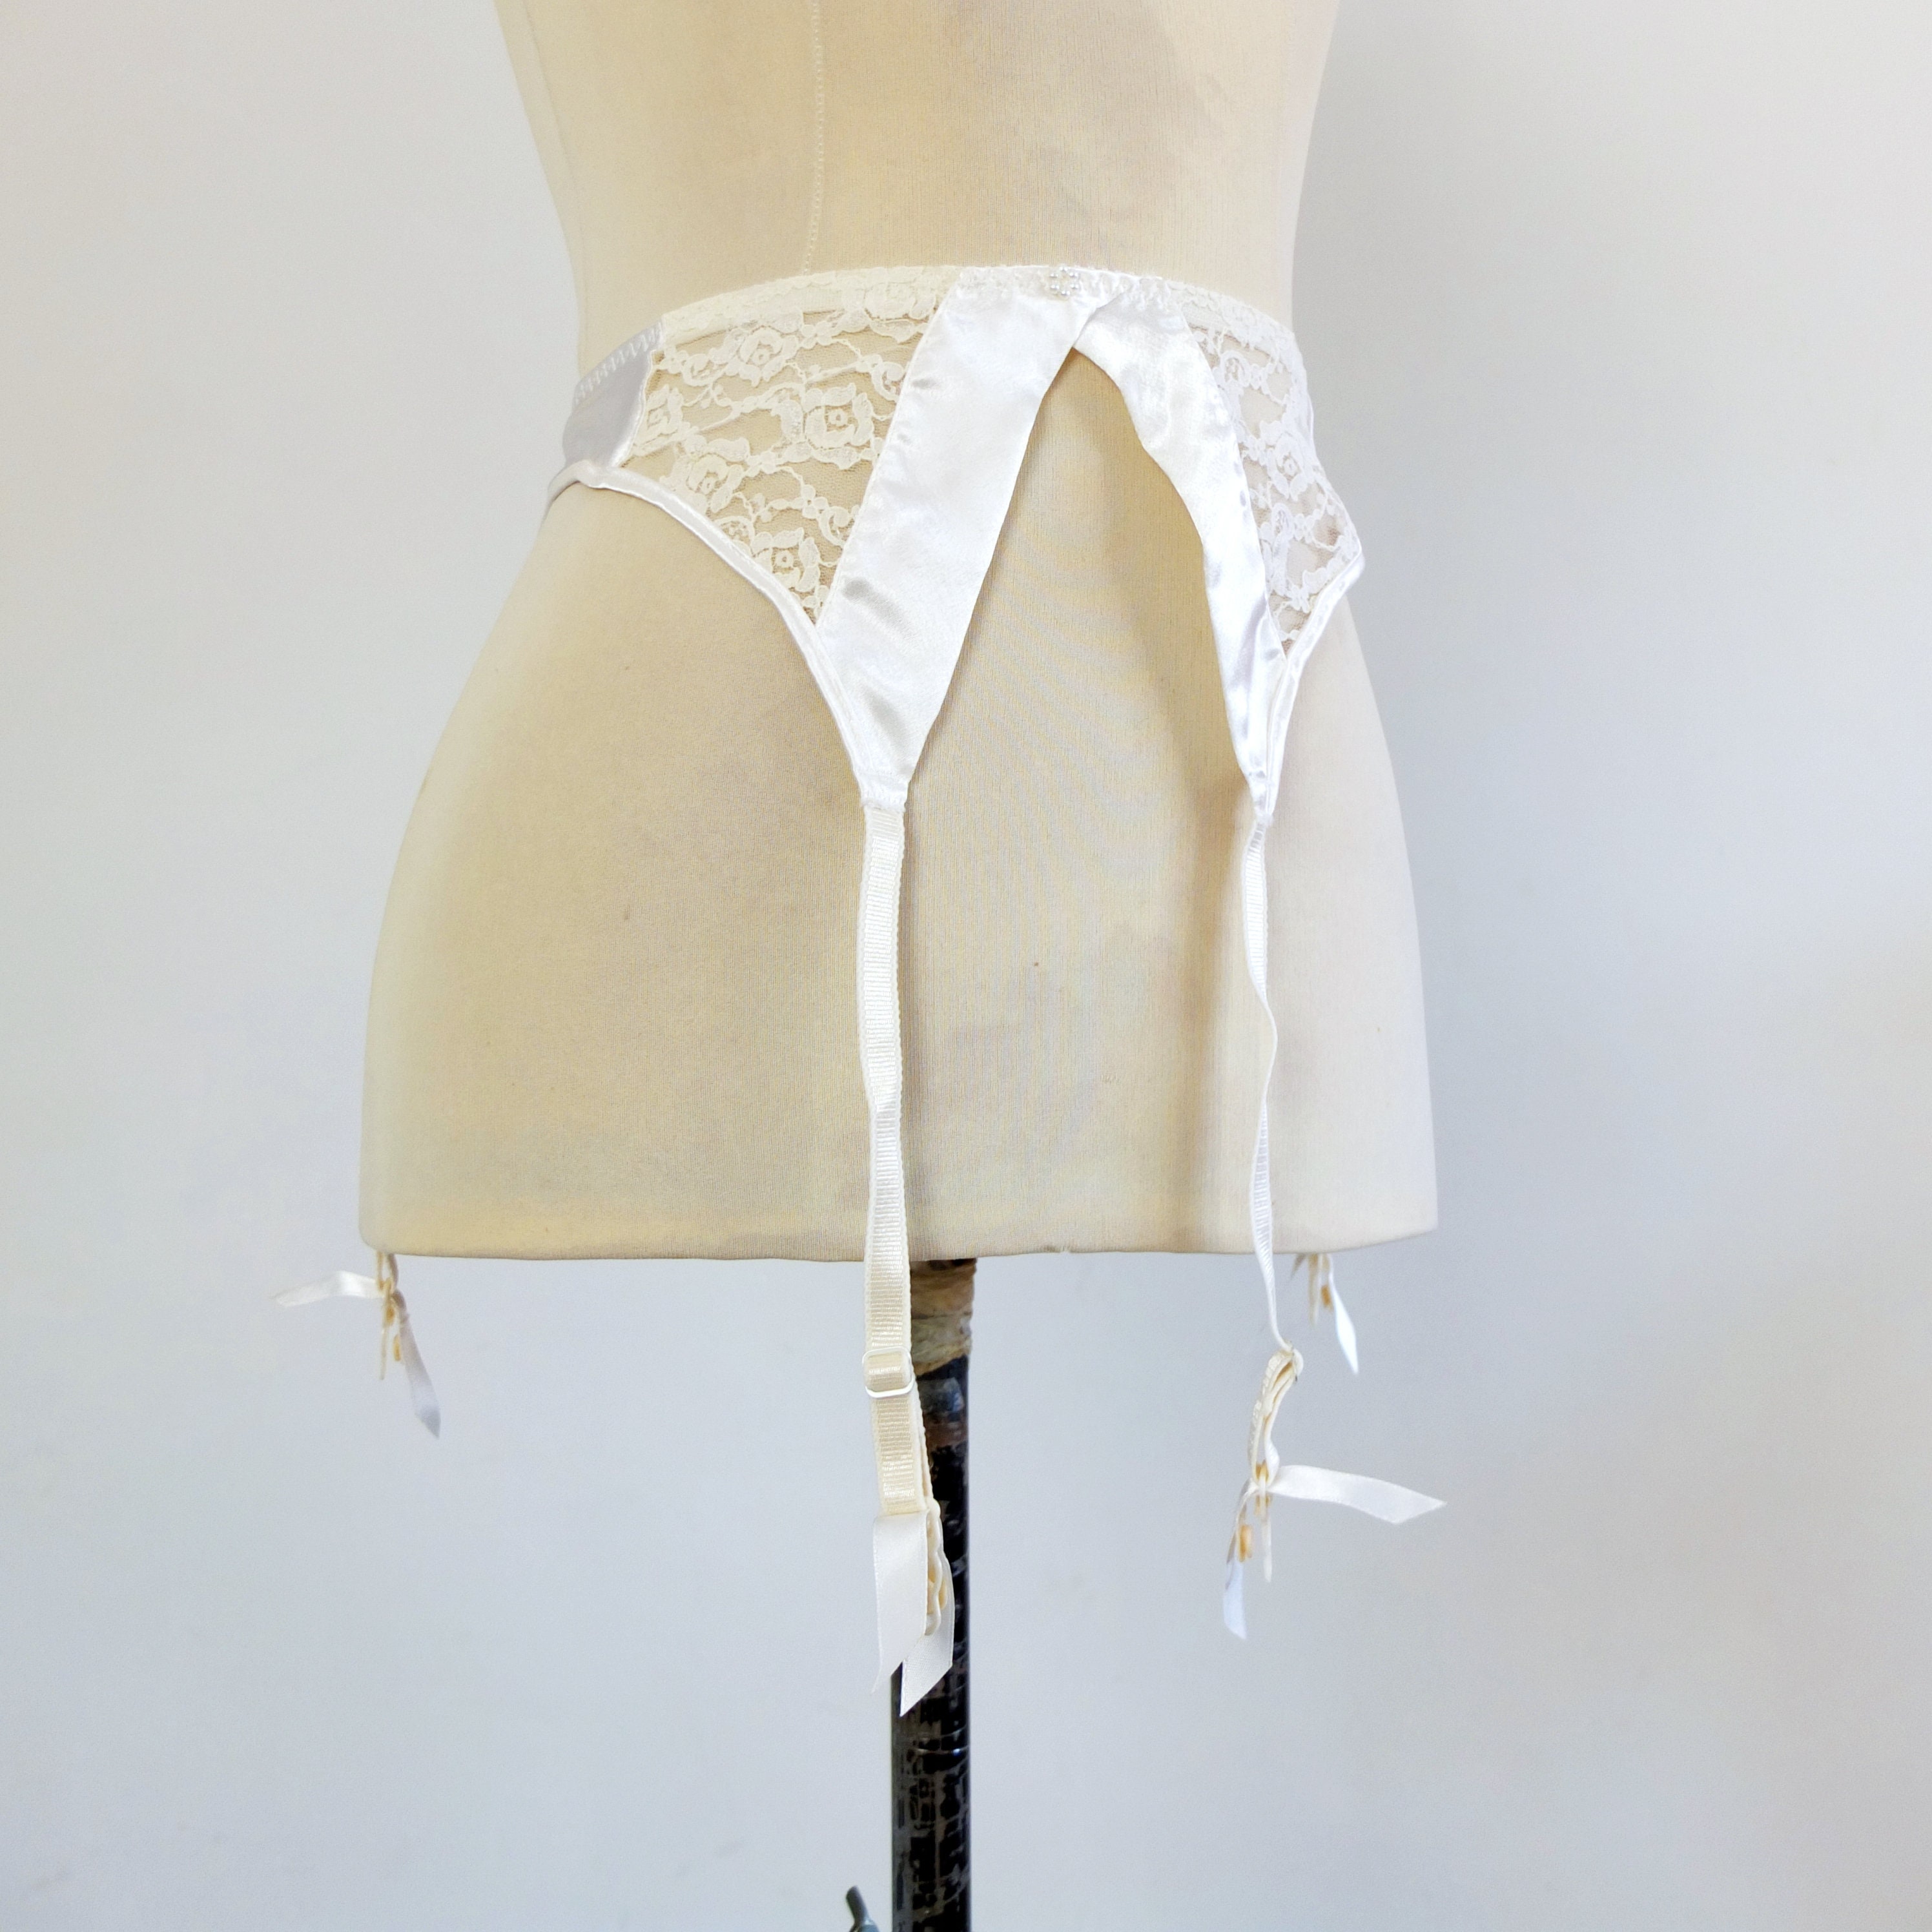 Vintage Victoria Secret Lace Garter Belt, White Satin Garter Belt With Lace,  Vintage Bridal Lingerie White Garter Belt, 90s Garter Belt, S -  New  Zealand